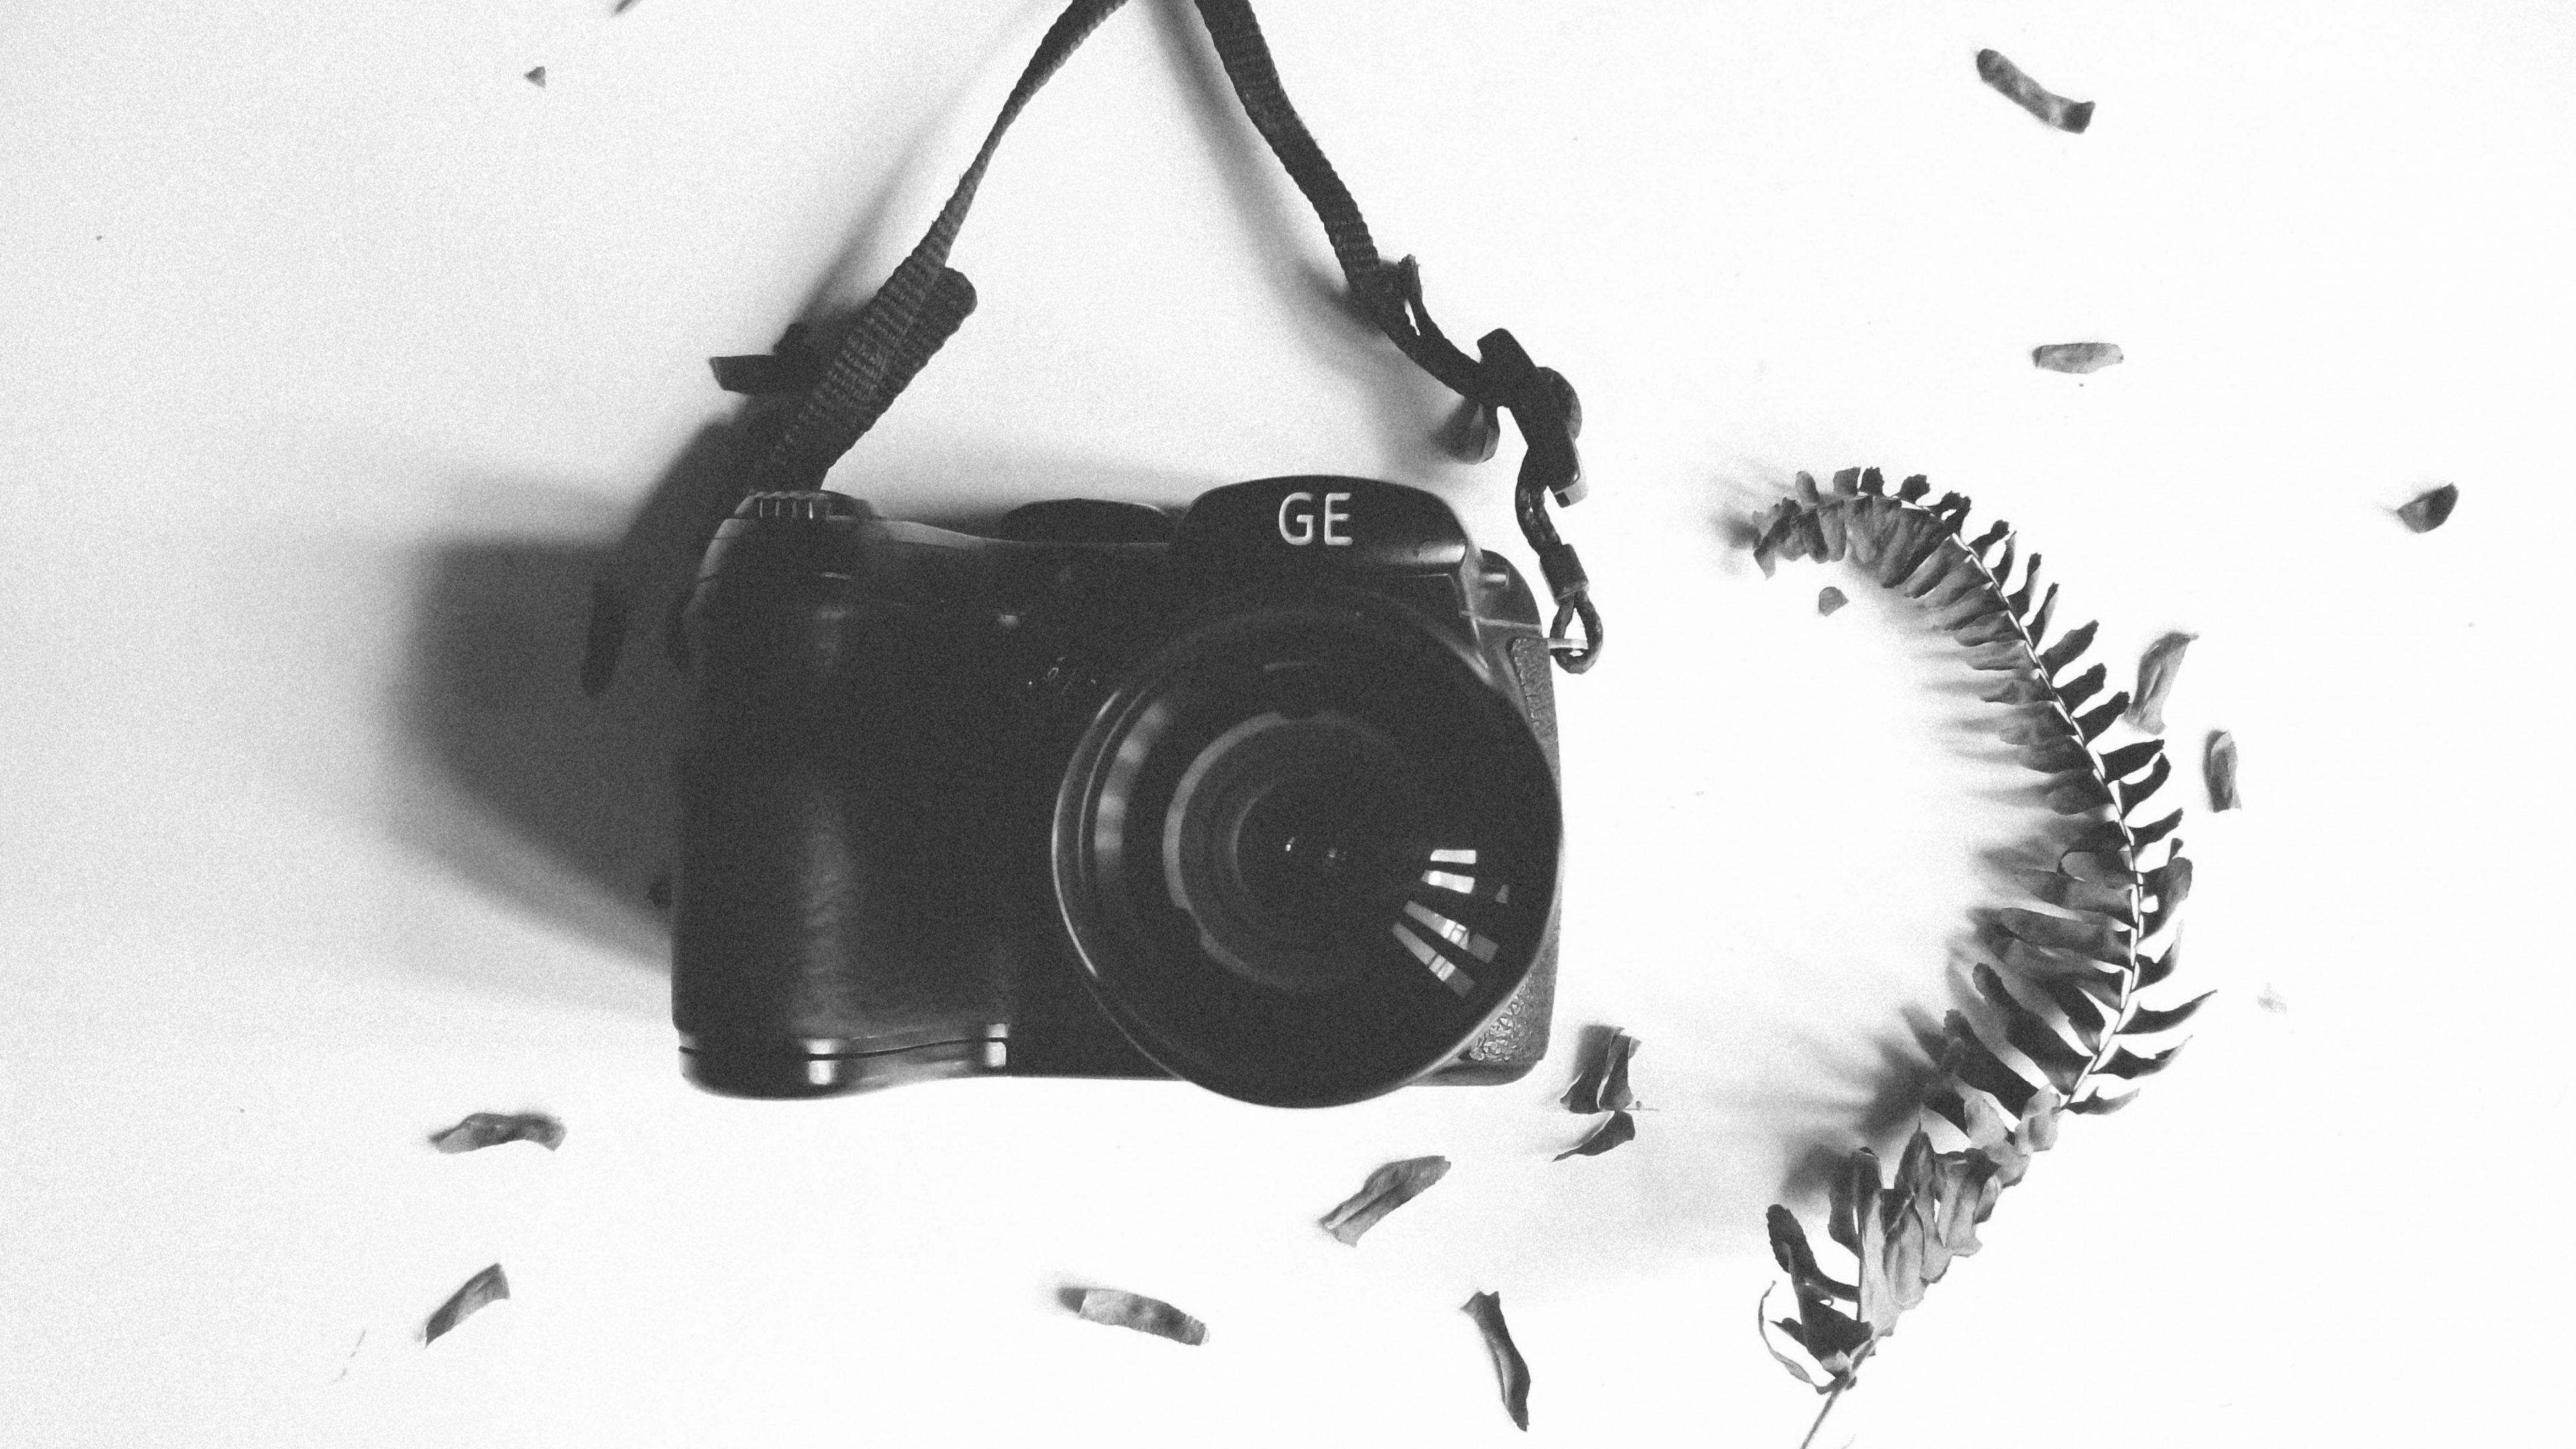 Schwarze Nikon Dslr Kamera Auf Weißem Textil. Wallpaper in 3840x2160 Resolution